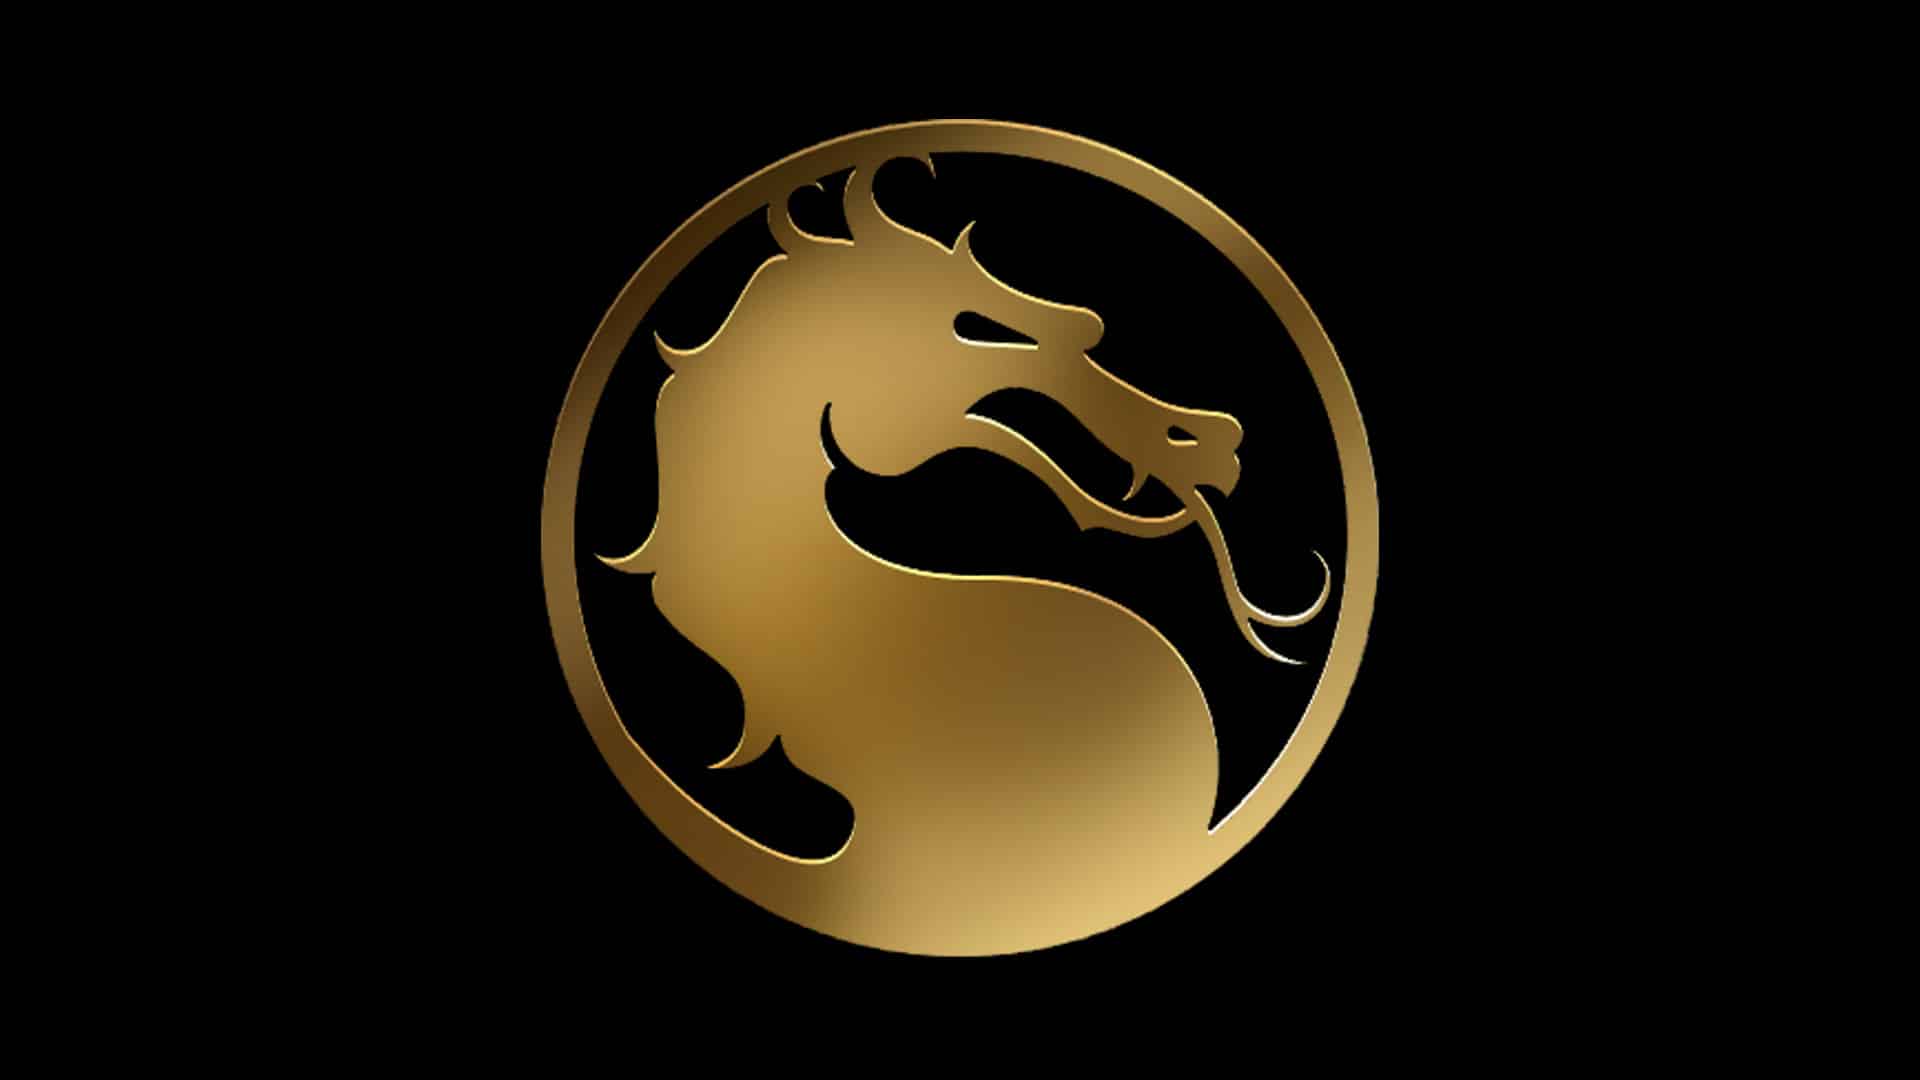 Mortal Kombat 12 - Trailer Release Date Leaks 